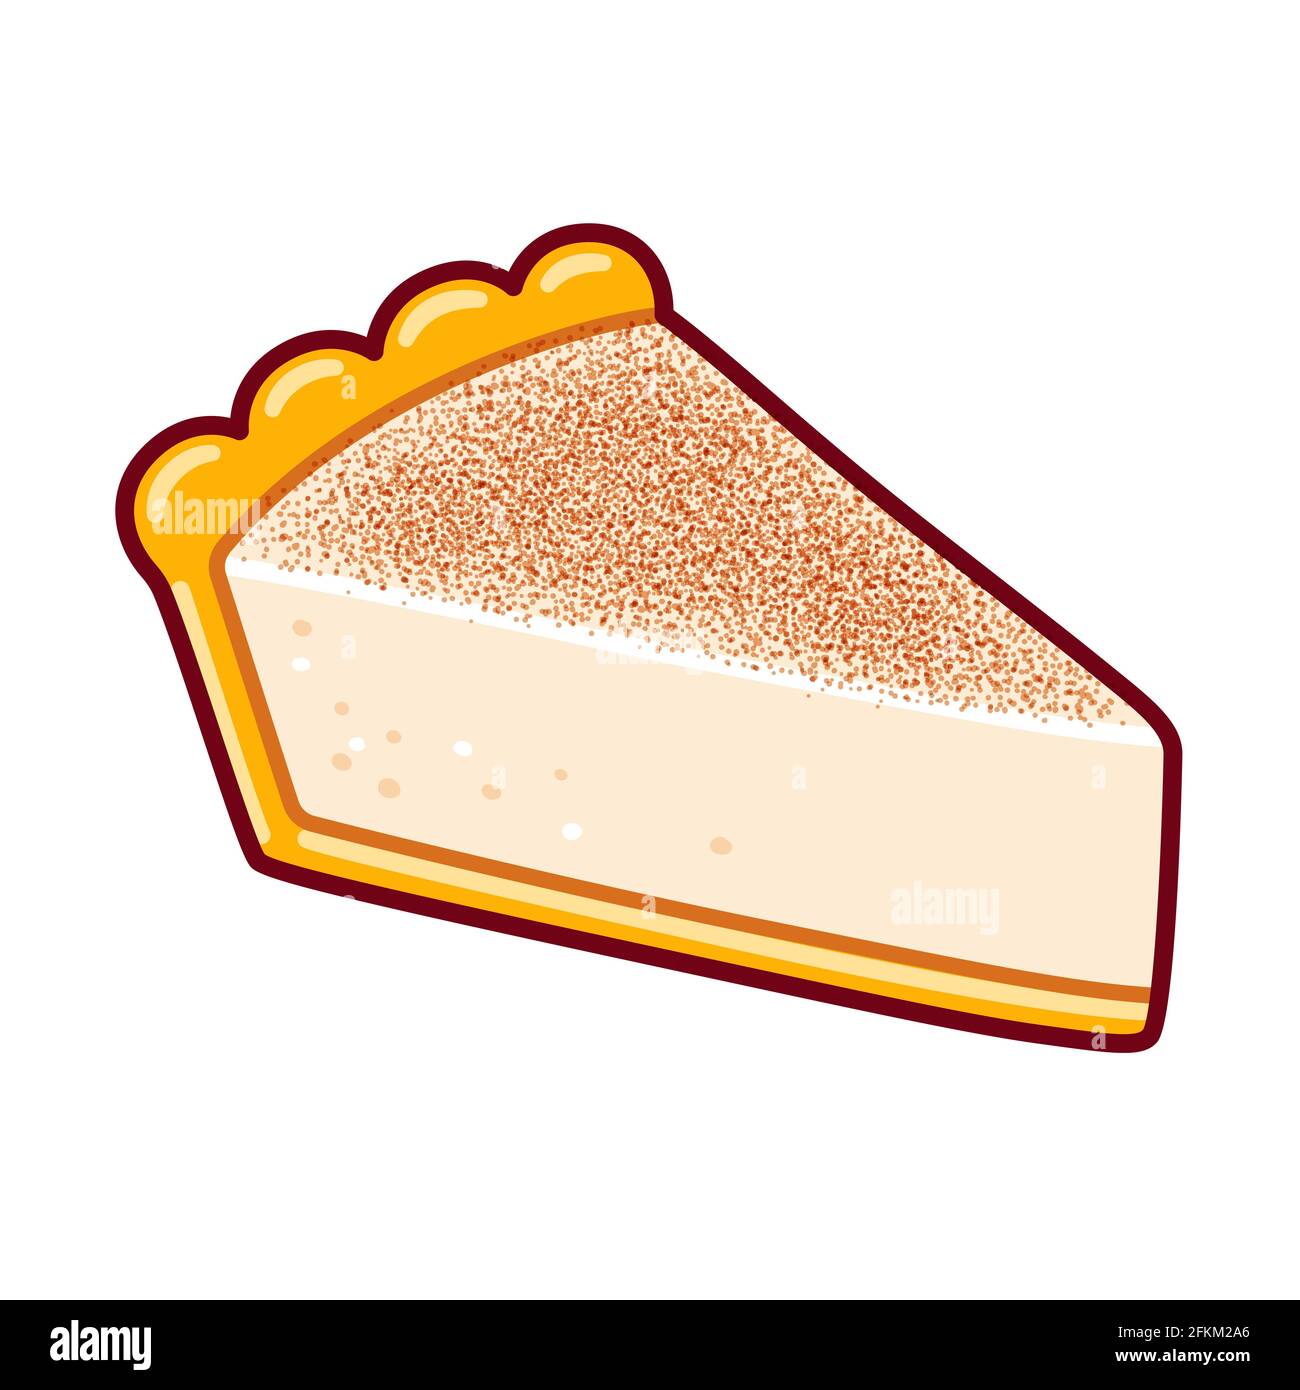 Melktert, tradizionale crostata di latte sudafricana. Dessert alla crema in crosta dolce. Disegno cartoon, illustrazione grafica vettoriale clip. Illustrazione Vettoriale